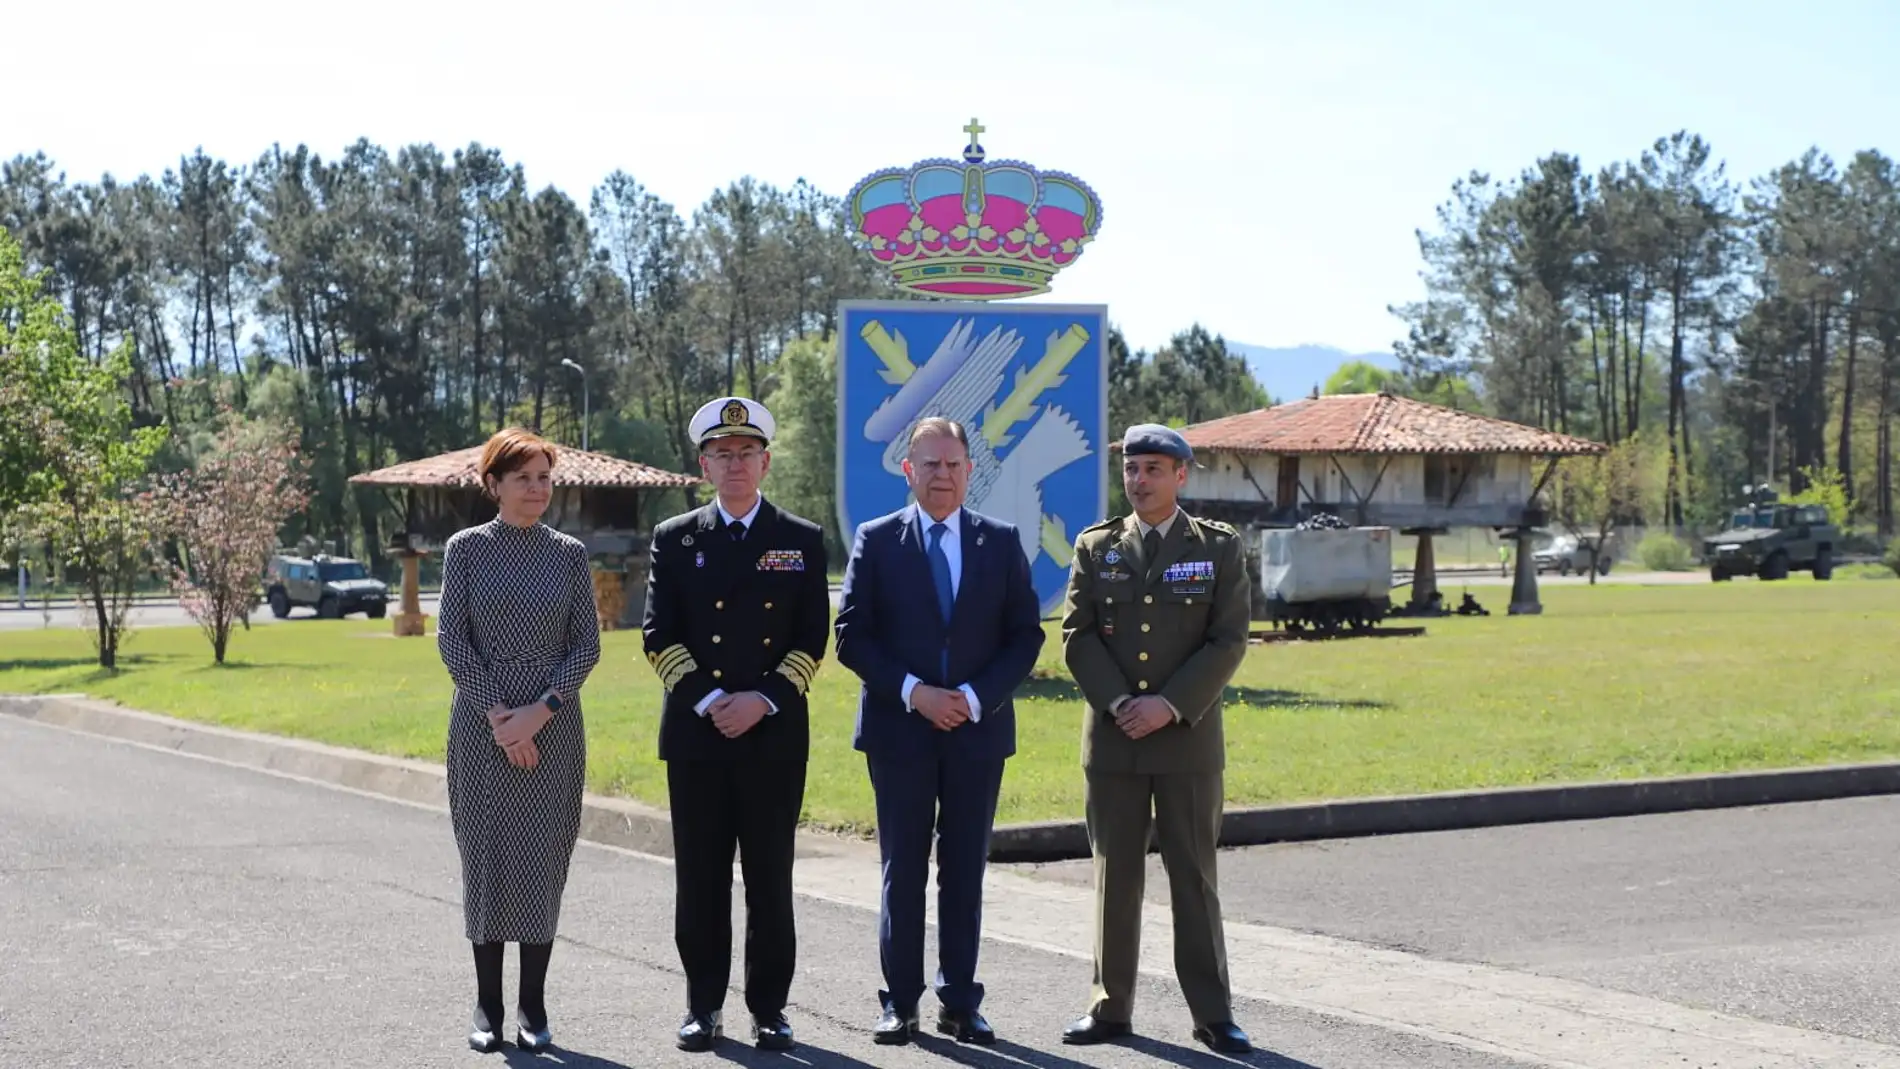 El Jefe del JEMAD Teodoro Esteban López presenta en Cabo Noval el Día de las Fuerzas Armadas junto a los alcaldes de Oviedo, Canteli y de Gijón, Moriyón